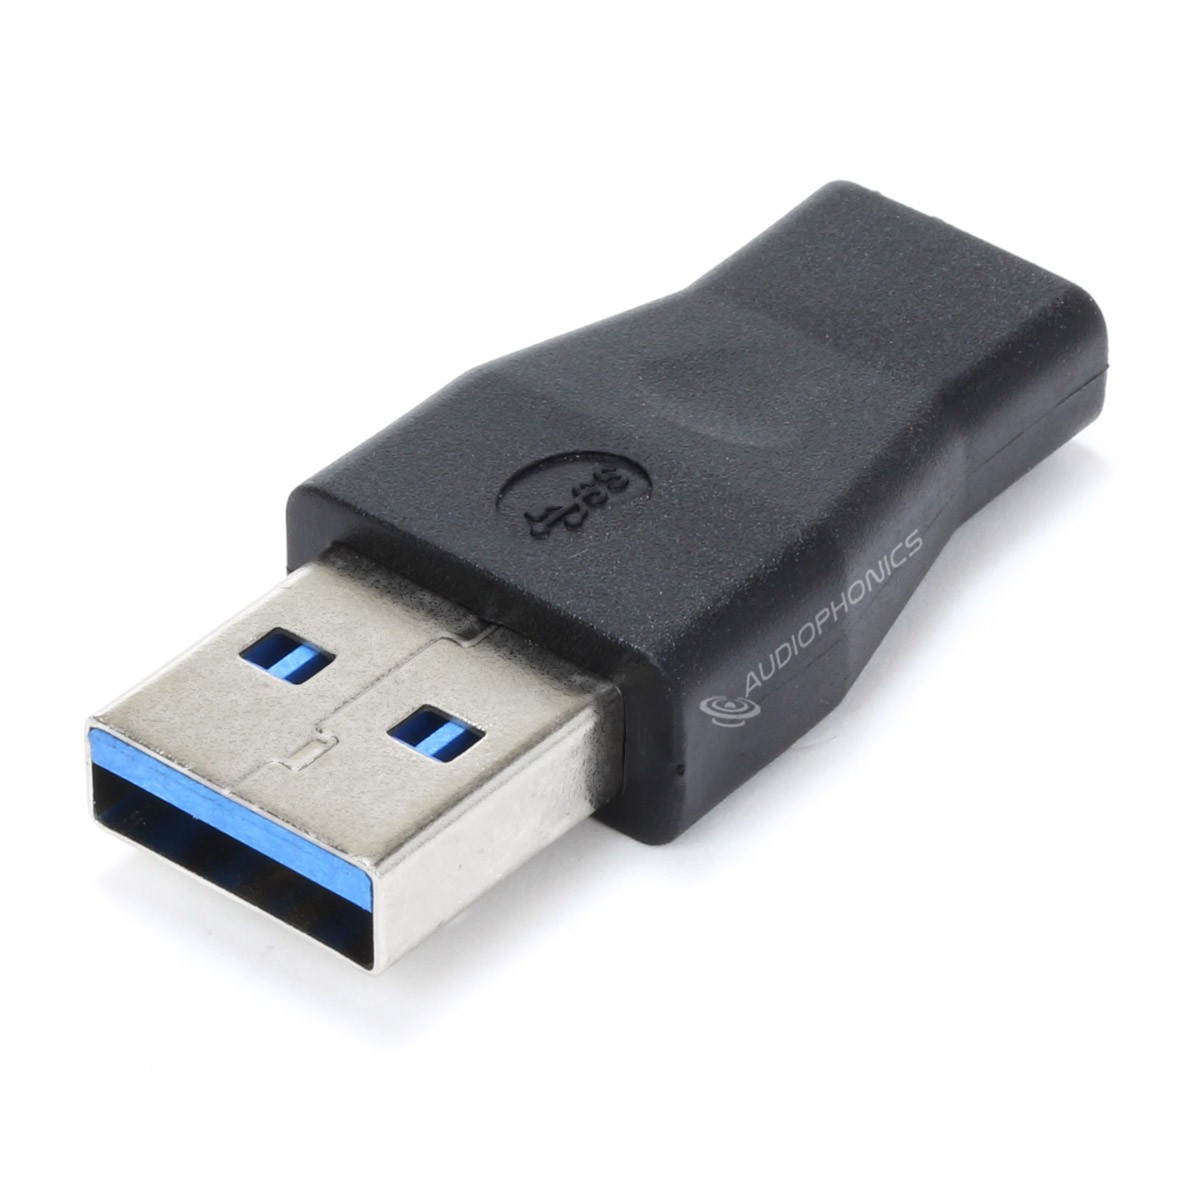 Cable adaptateur USB OTG Femelle vers USB Type C Male - Lecteur de